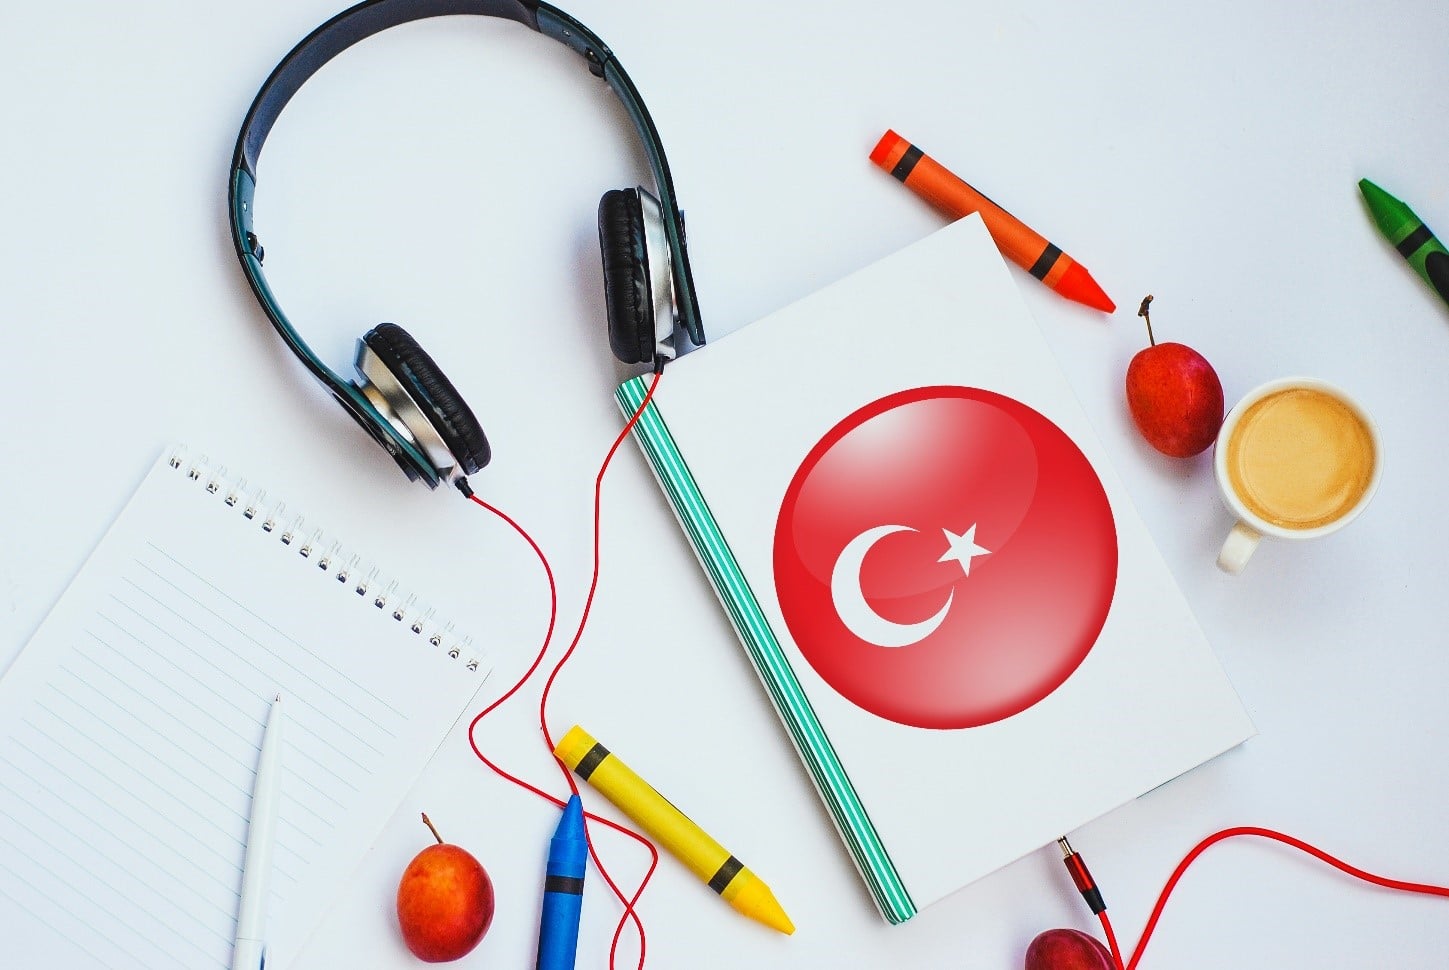 آیا یادگیری زبان ترکی استانبولی سخت است